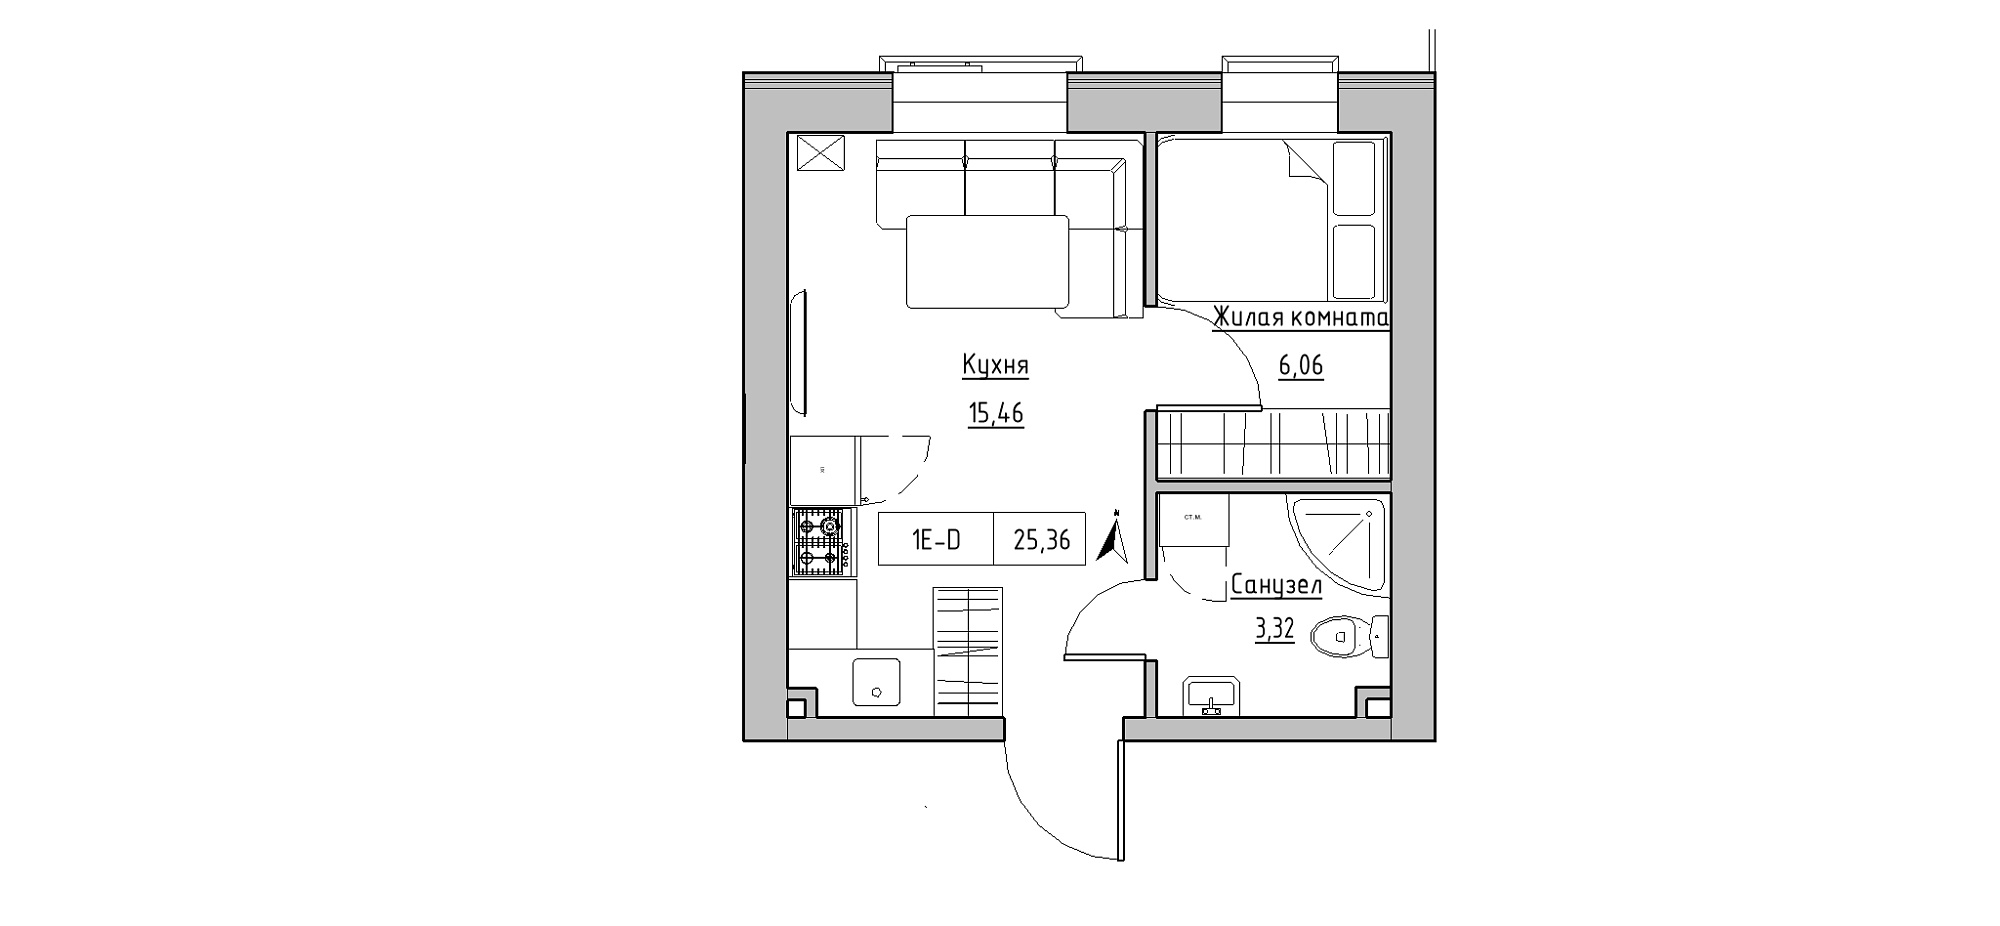 Планировка 1-к квартира площей 25.36м2, KS-020-05/0002.